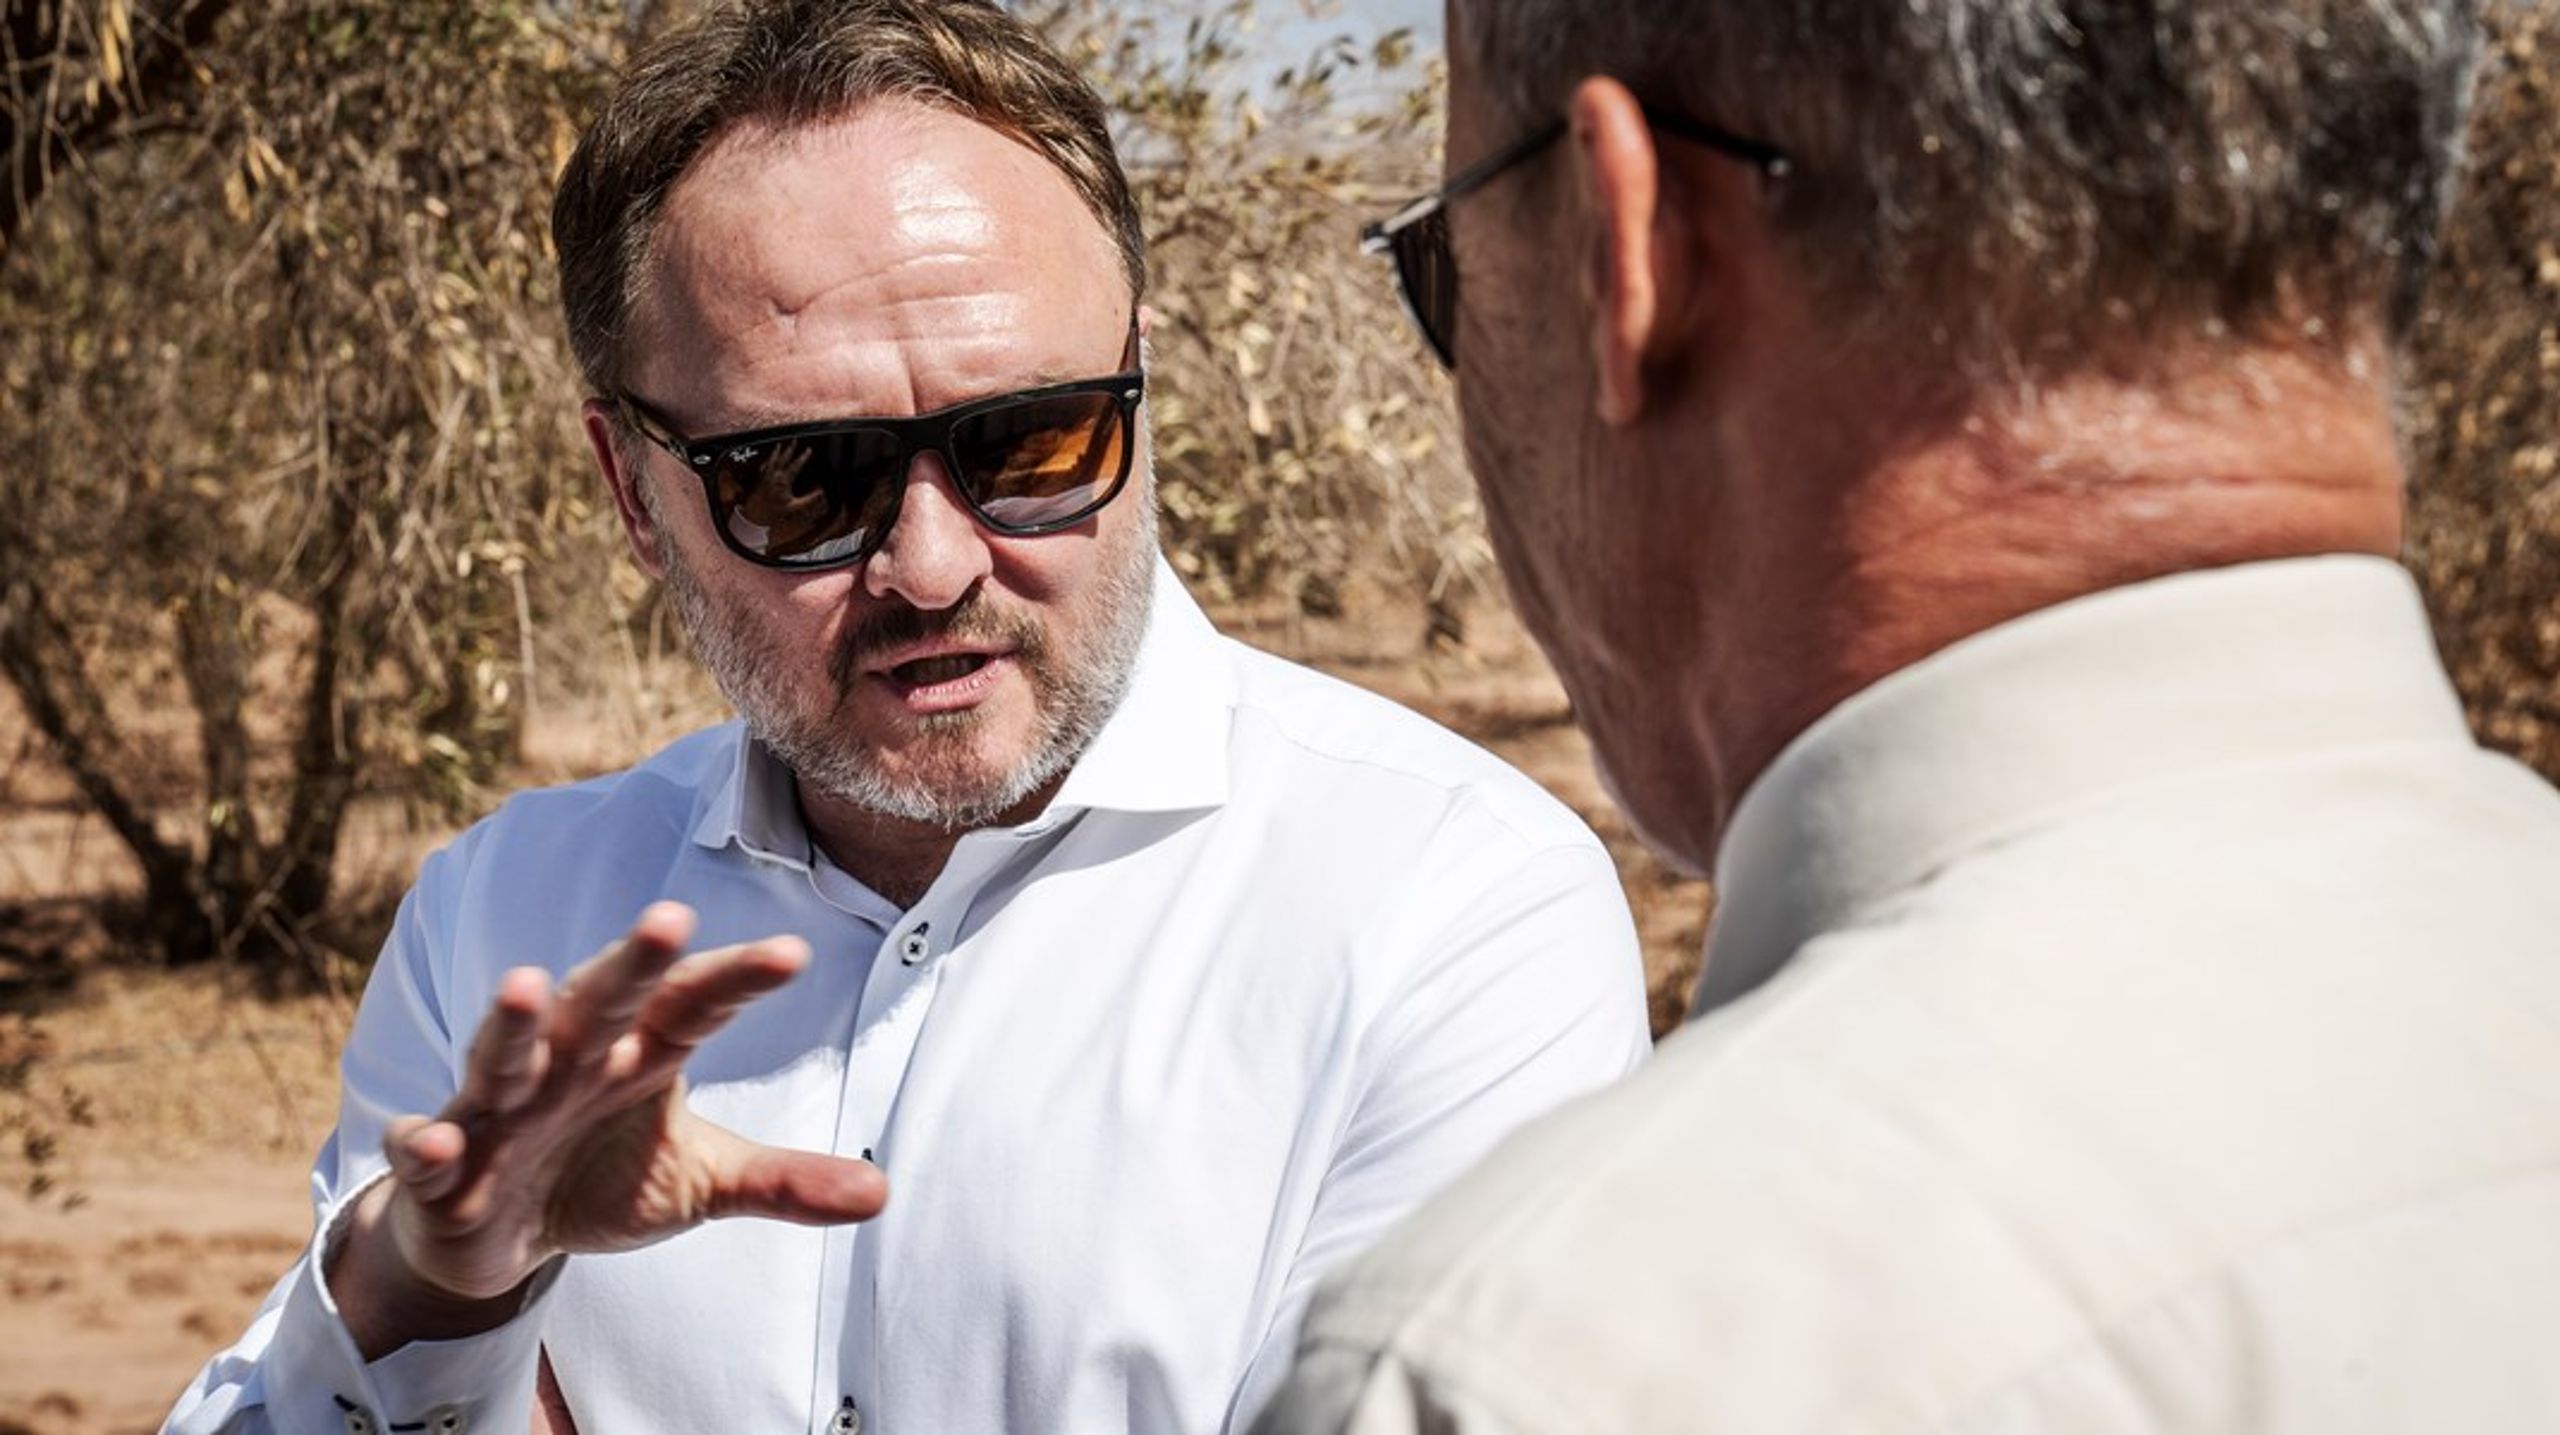 Minister for udviklingssamarbejde og global klimapolitik Dan Jørgensen besøger en tørkeramt olivenfarm i Marokko i oktober. 